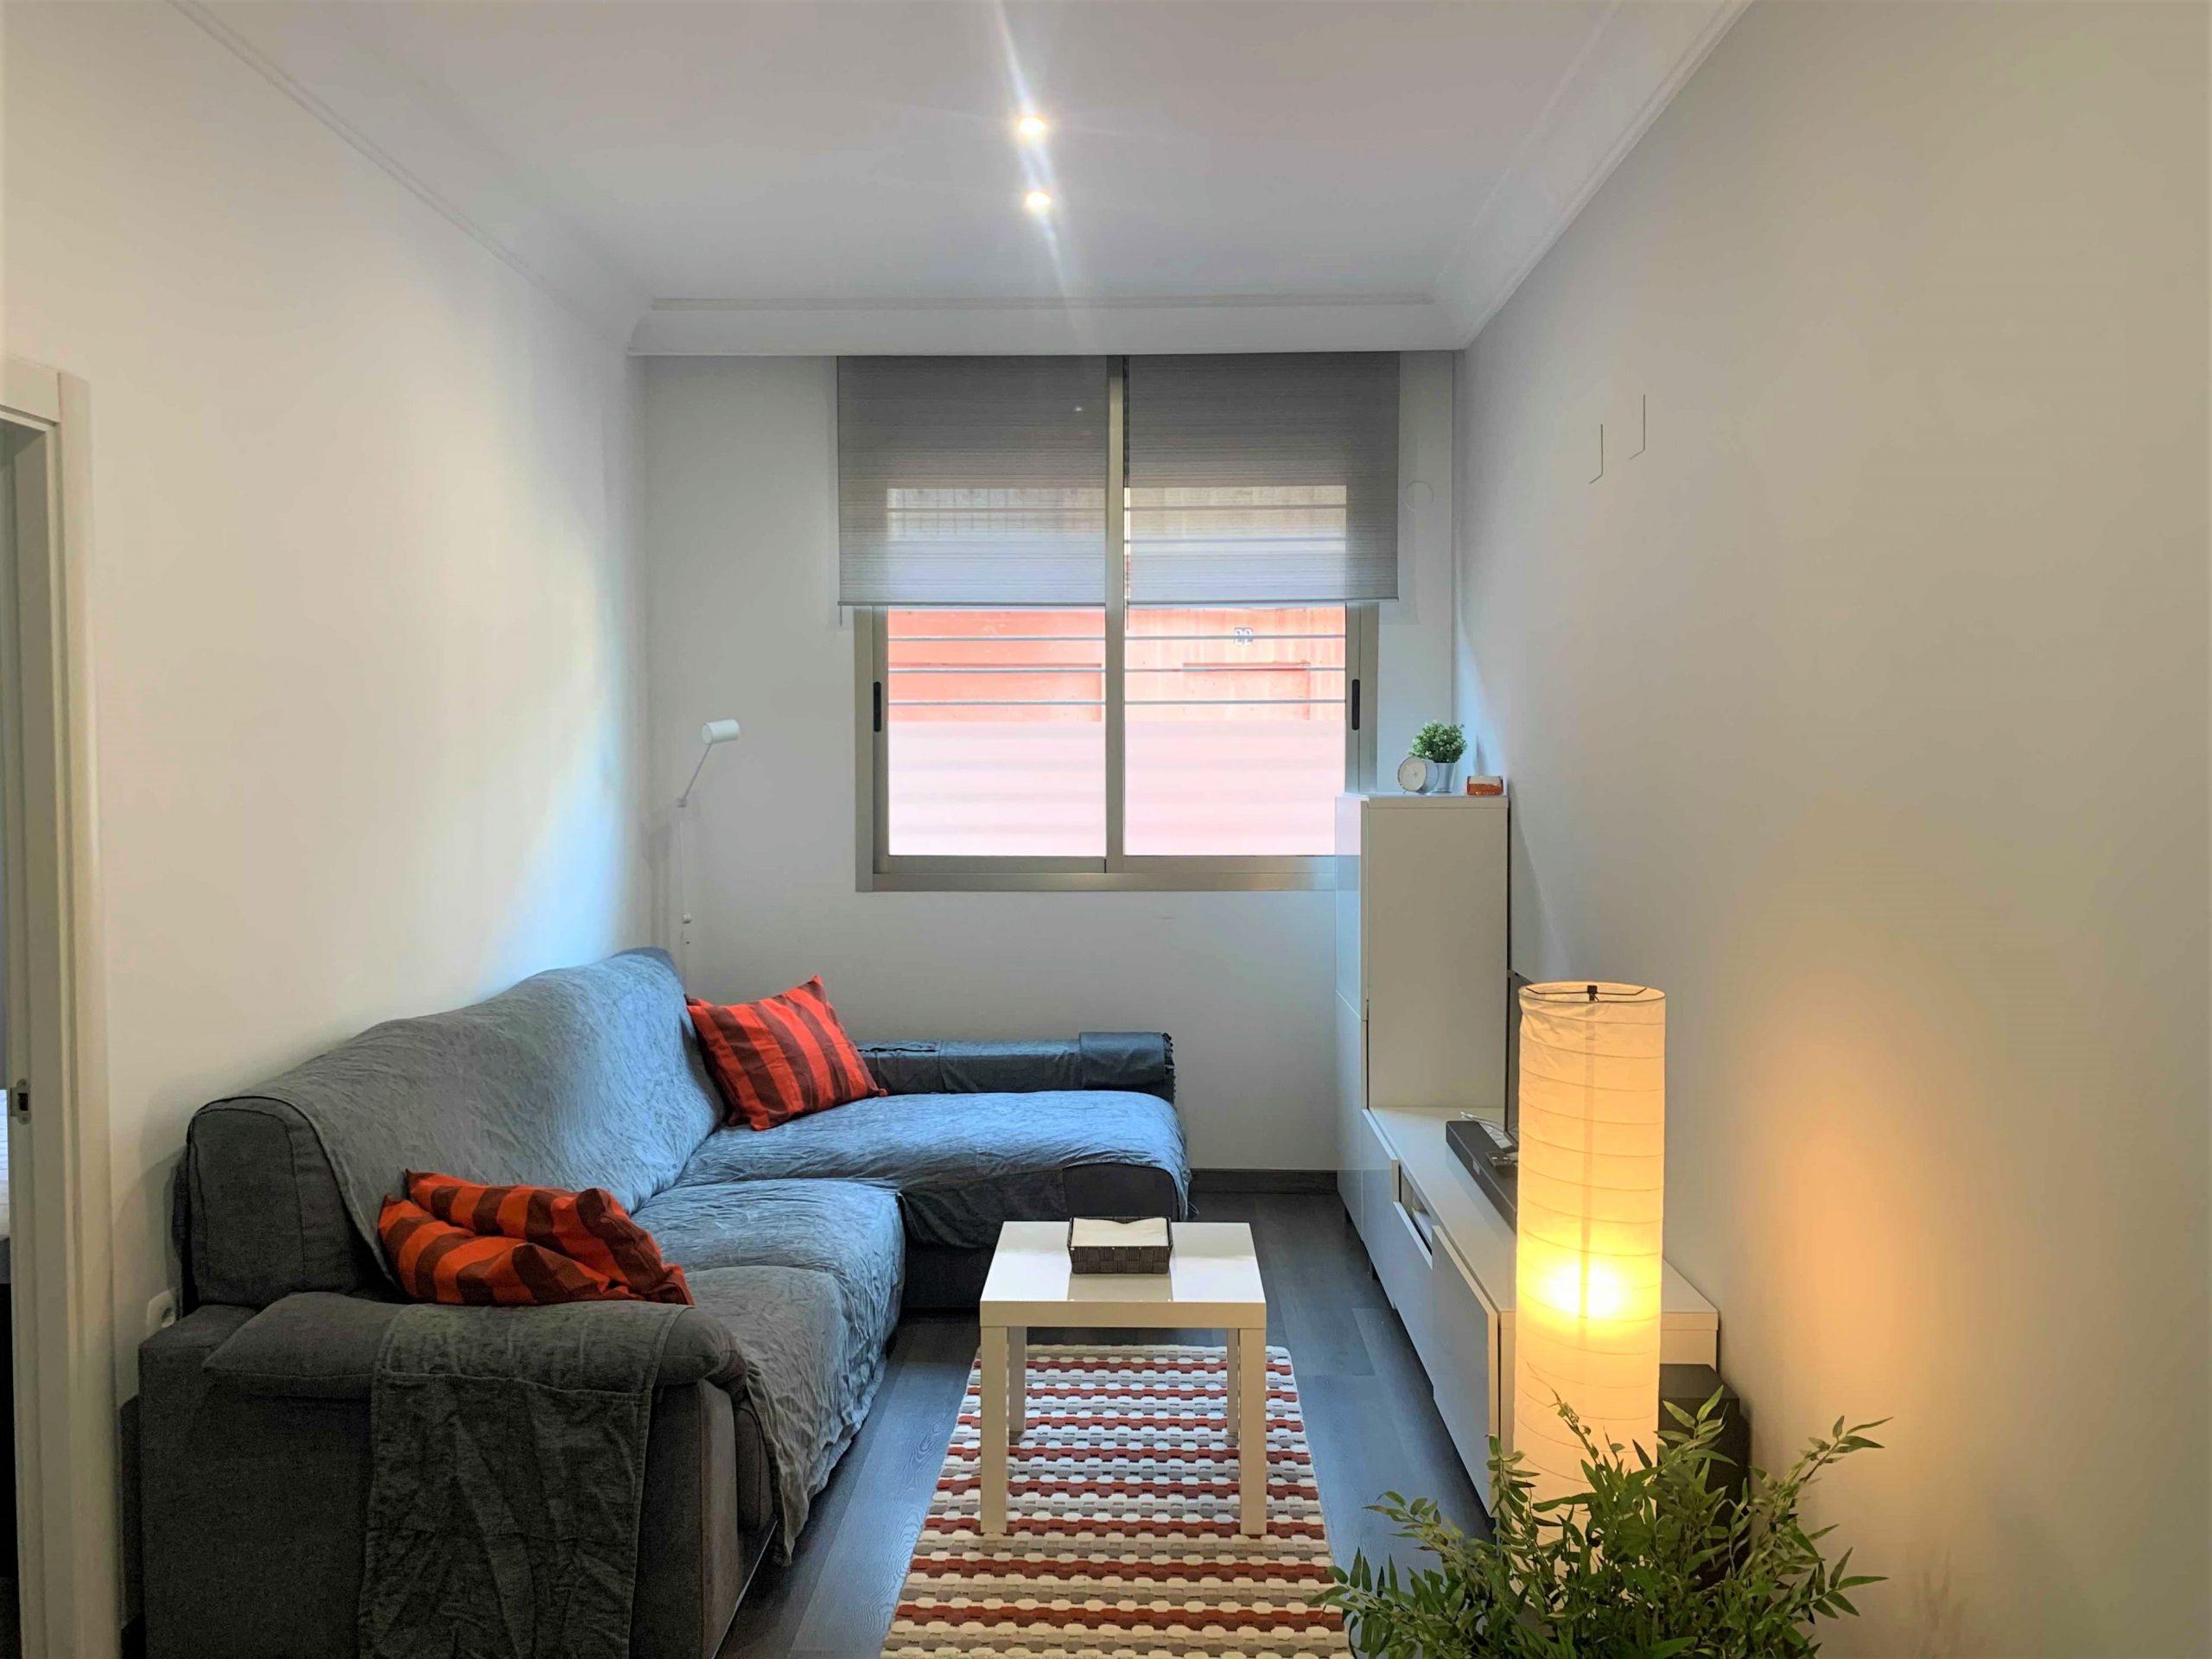 Porvenir - Precioso piso para expats en Valencia